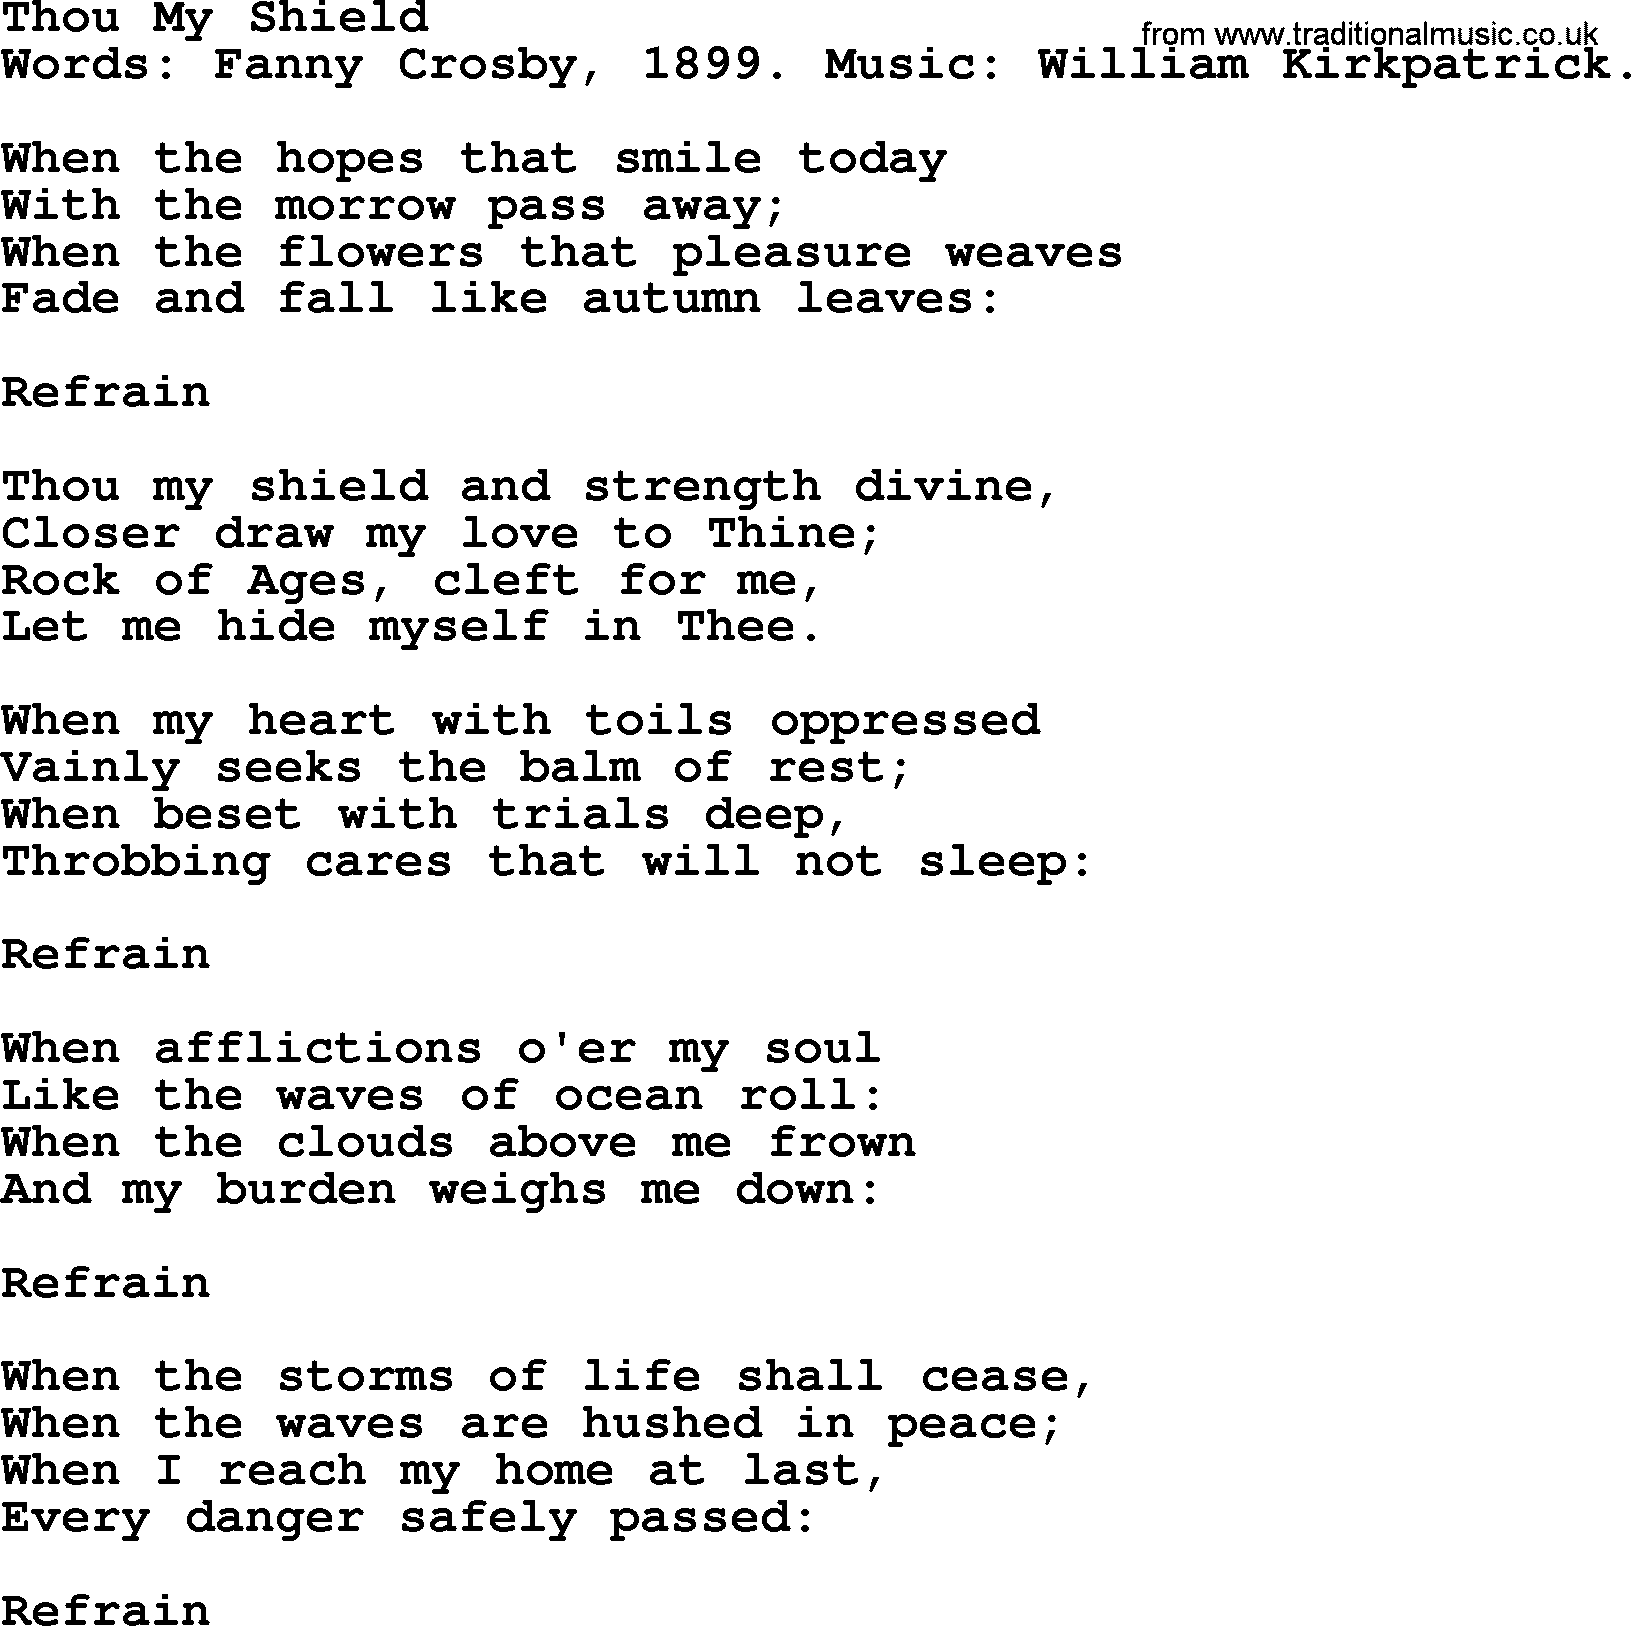 Fanny Crosby song: Thou My Shield, lyrics